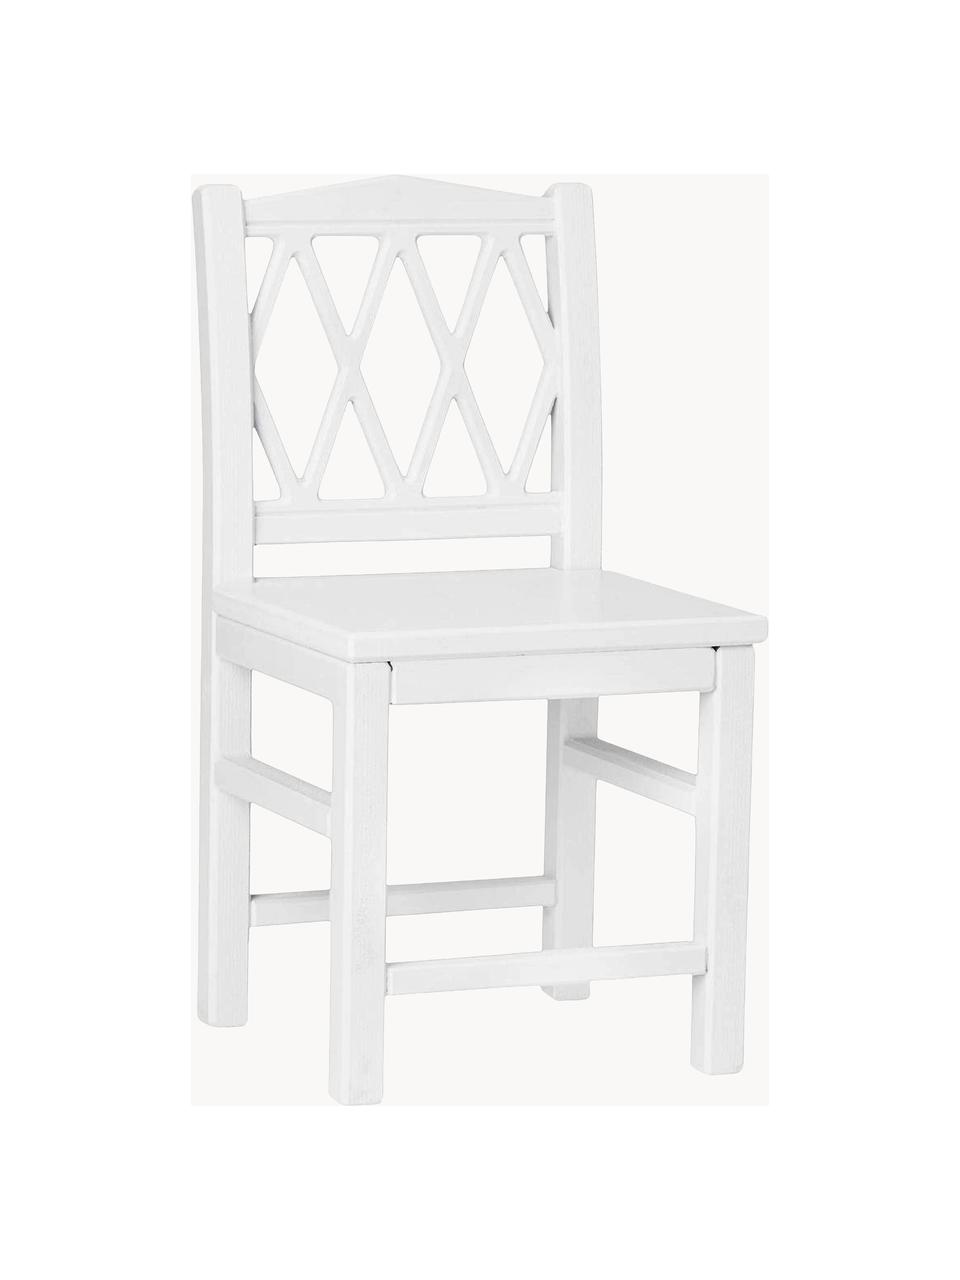 Dřevěná dětská židle Harlequin, Březové dřevo, dřevovláknitá deska se střední hustotou (MDF), natřená barvou bez VOC, Březové dřevo, bíle lakované, Š 30 cm, V 58 cm